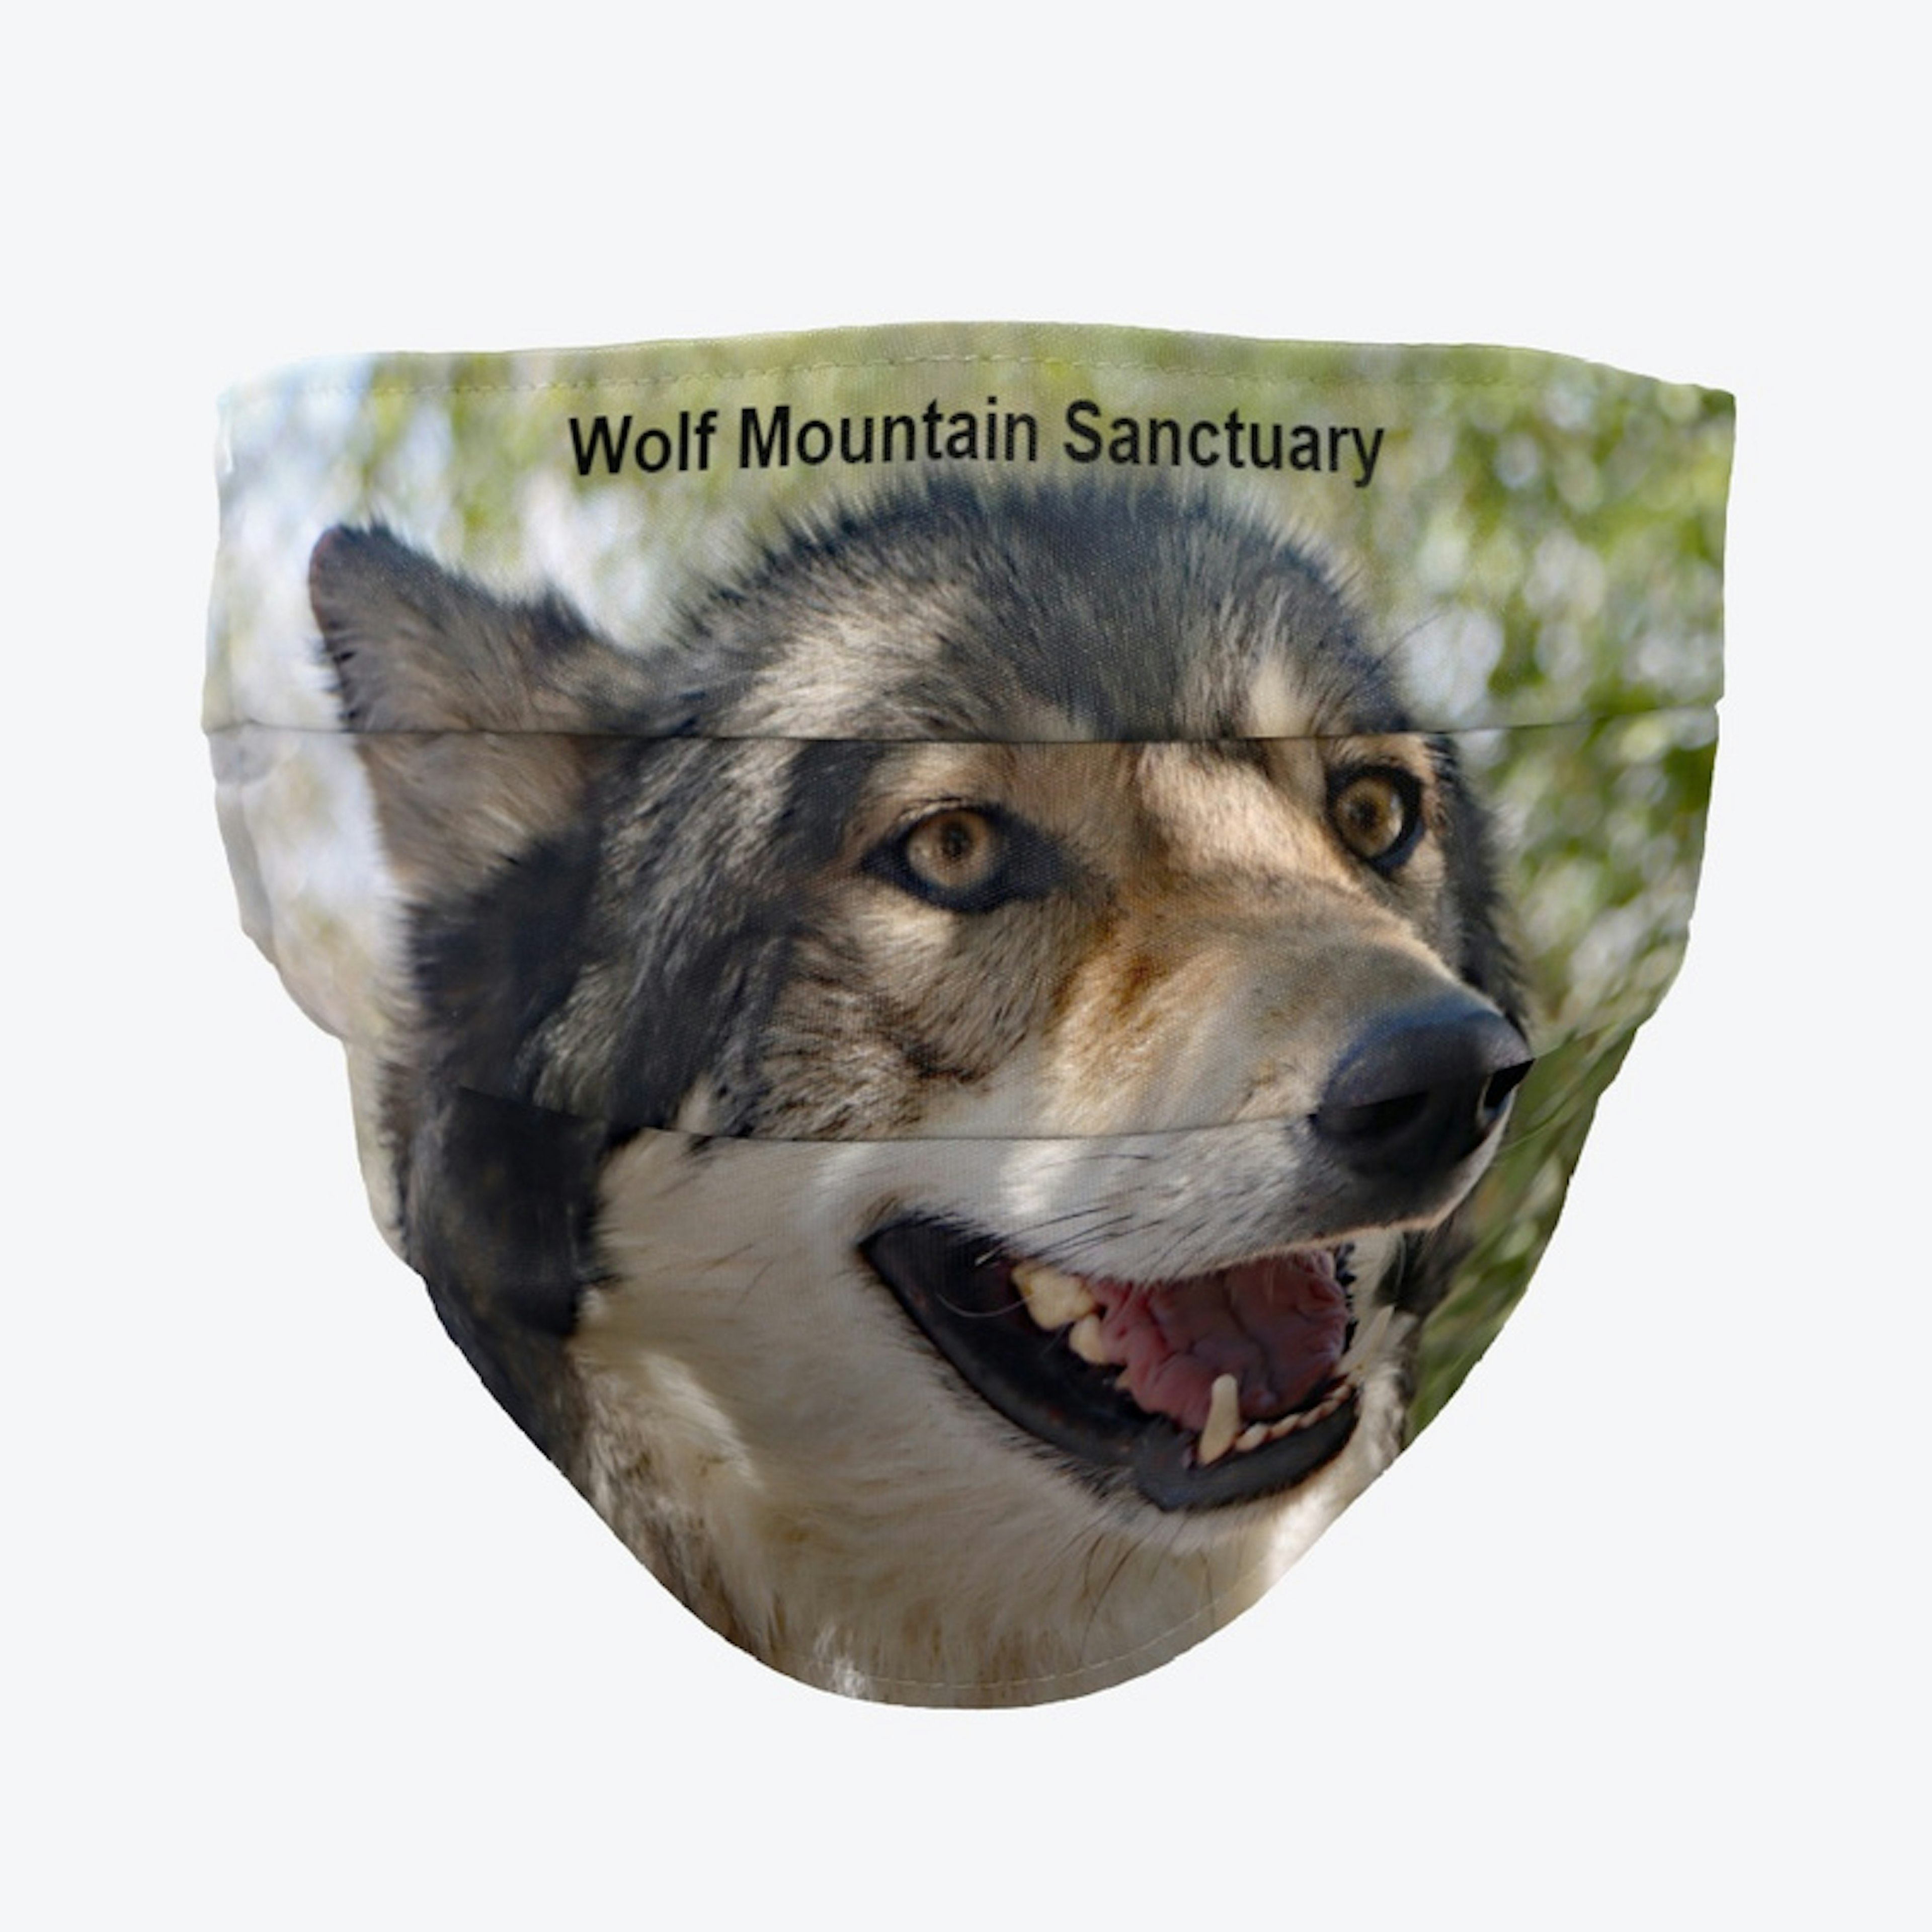 Holan-Wolf Mountain Sanctuary-Mask & Mug